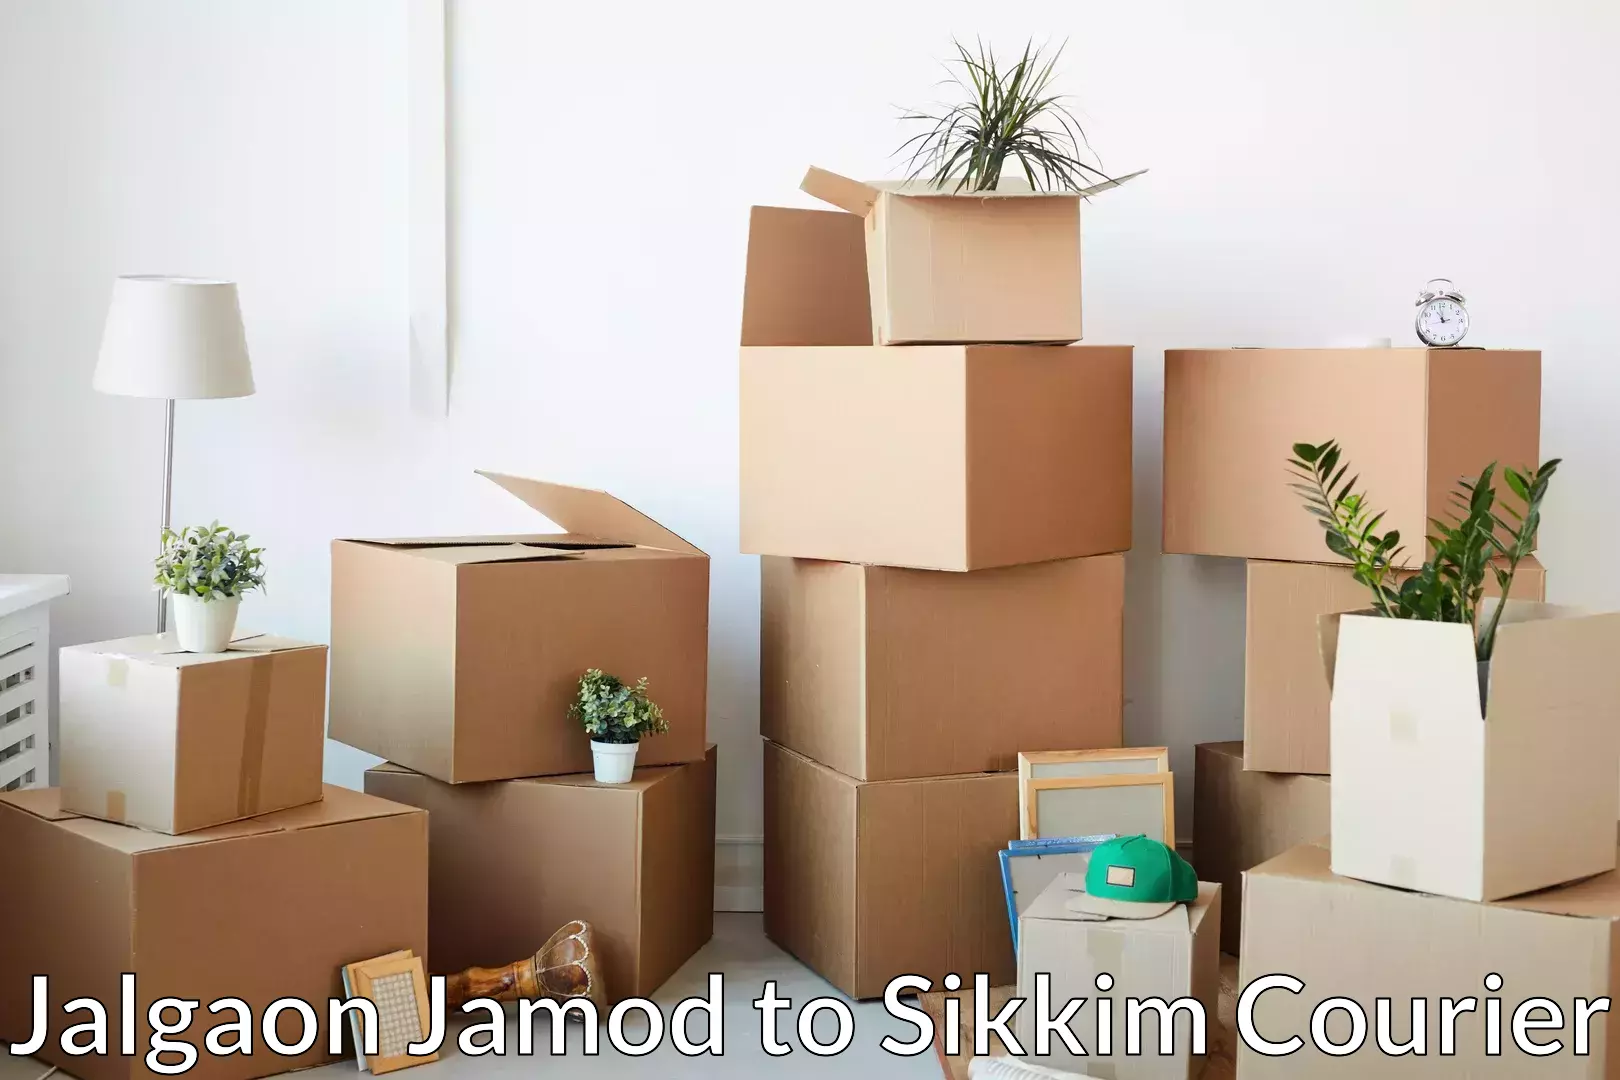 Furniture relocation experts Jalgaon Jamod to Namchi